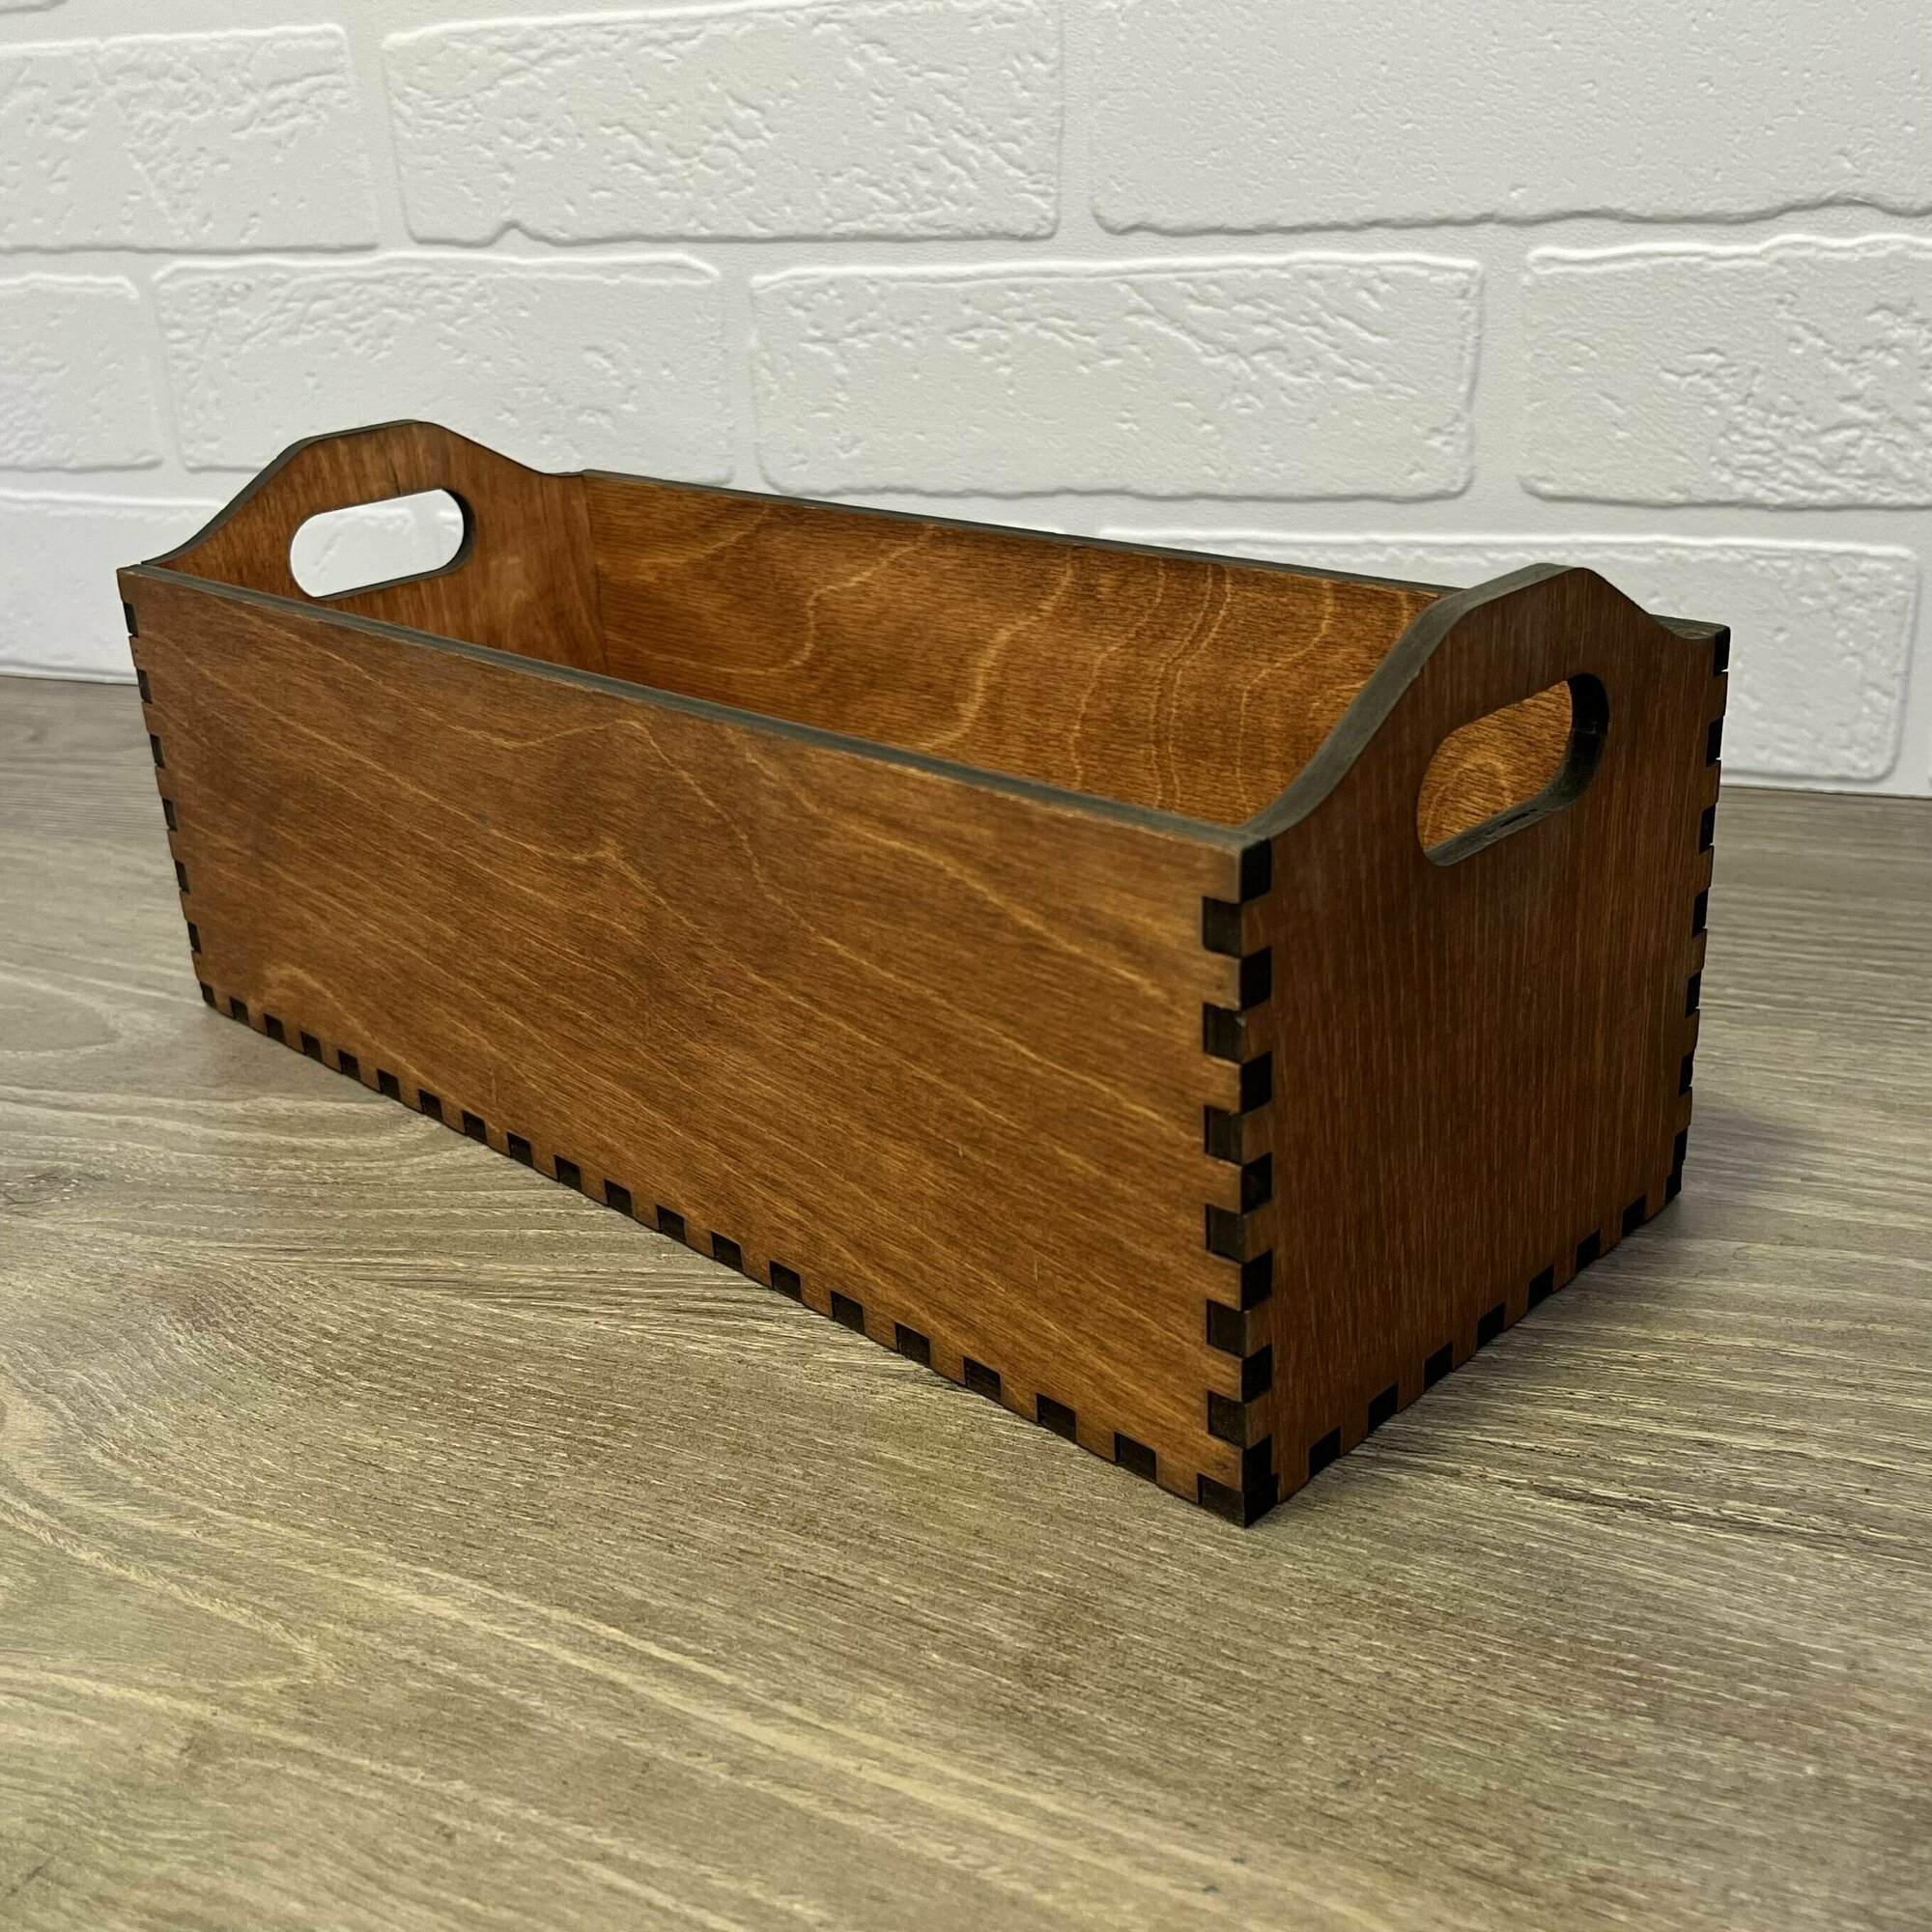 Ящик деревяный для хранения PinePeak / коробка для хранения вещей / деревянный ящик